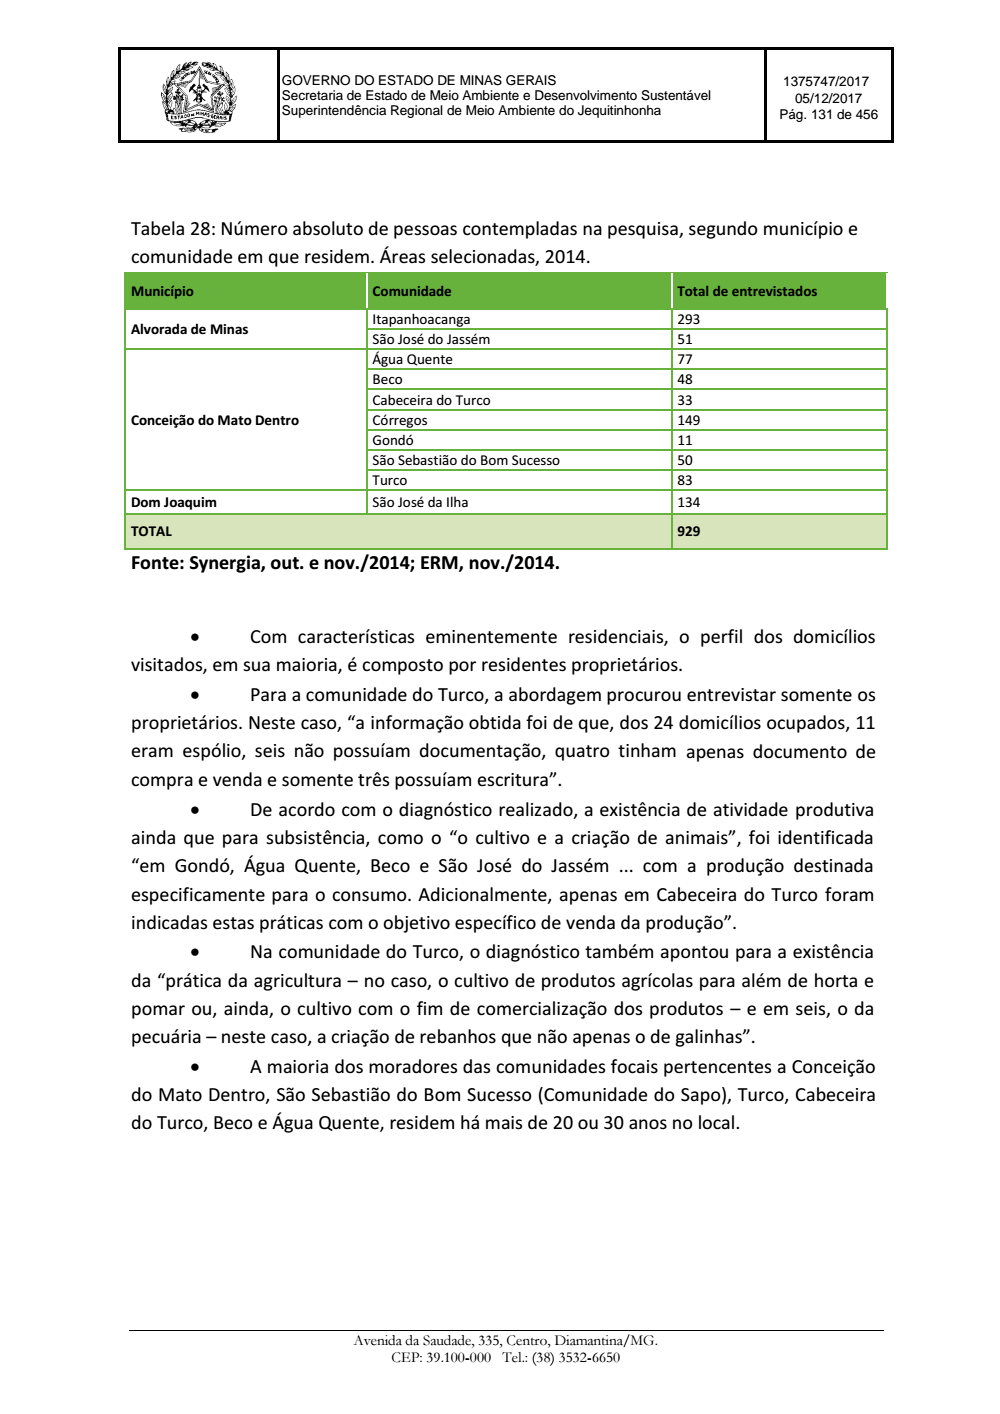 Page 131 from Parecer único da Secretaria de estado de Meio Ambiente e Desenvolvimento Sustentável (SEMAD)